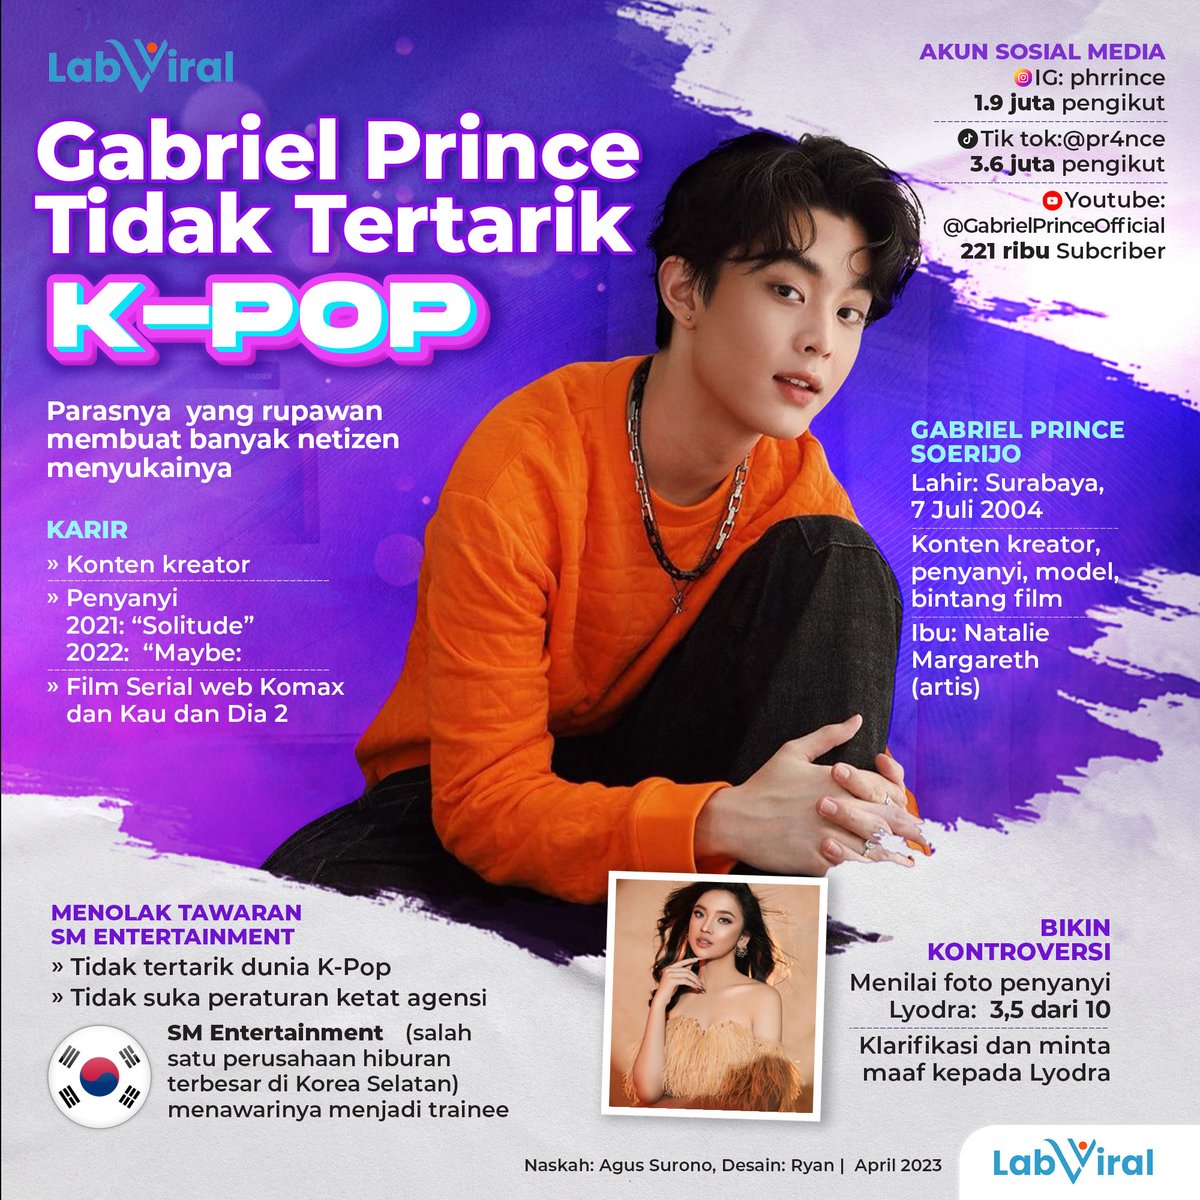 Masih muda, bertalenta, memiliki wajah yang menarik dan punya kemiripan dengan artis korea membuat Gabriel Prince cepat mendapat perhatian dan fans publik.

#labviralinfografis #infografis #gabrielprince #smentertainment #viral